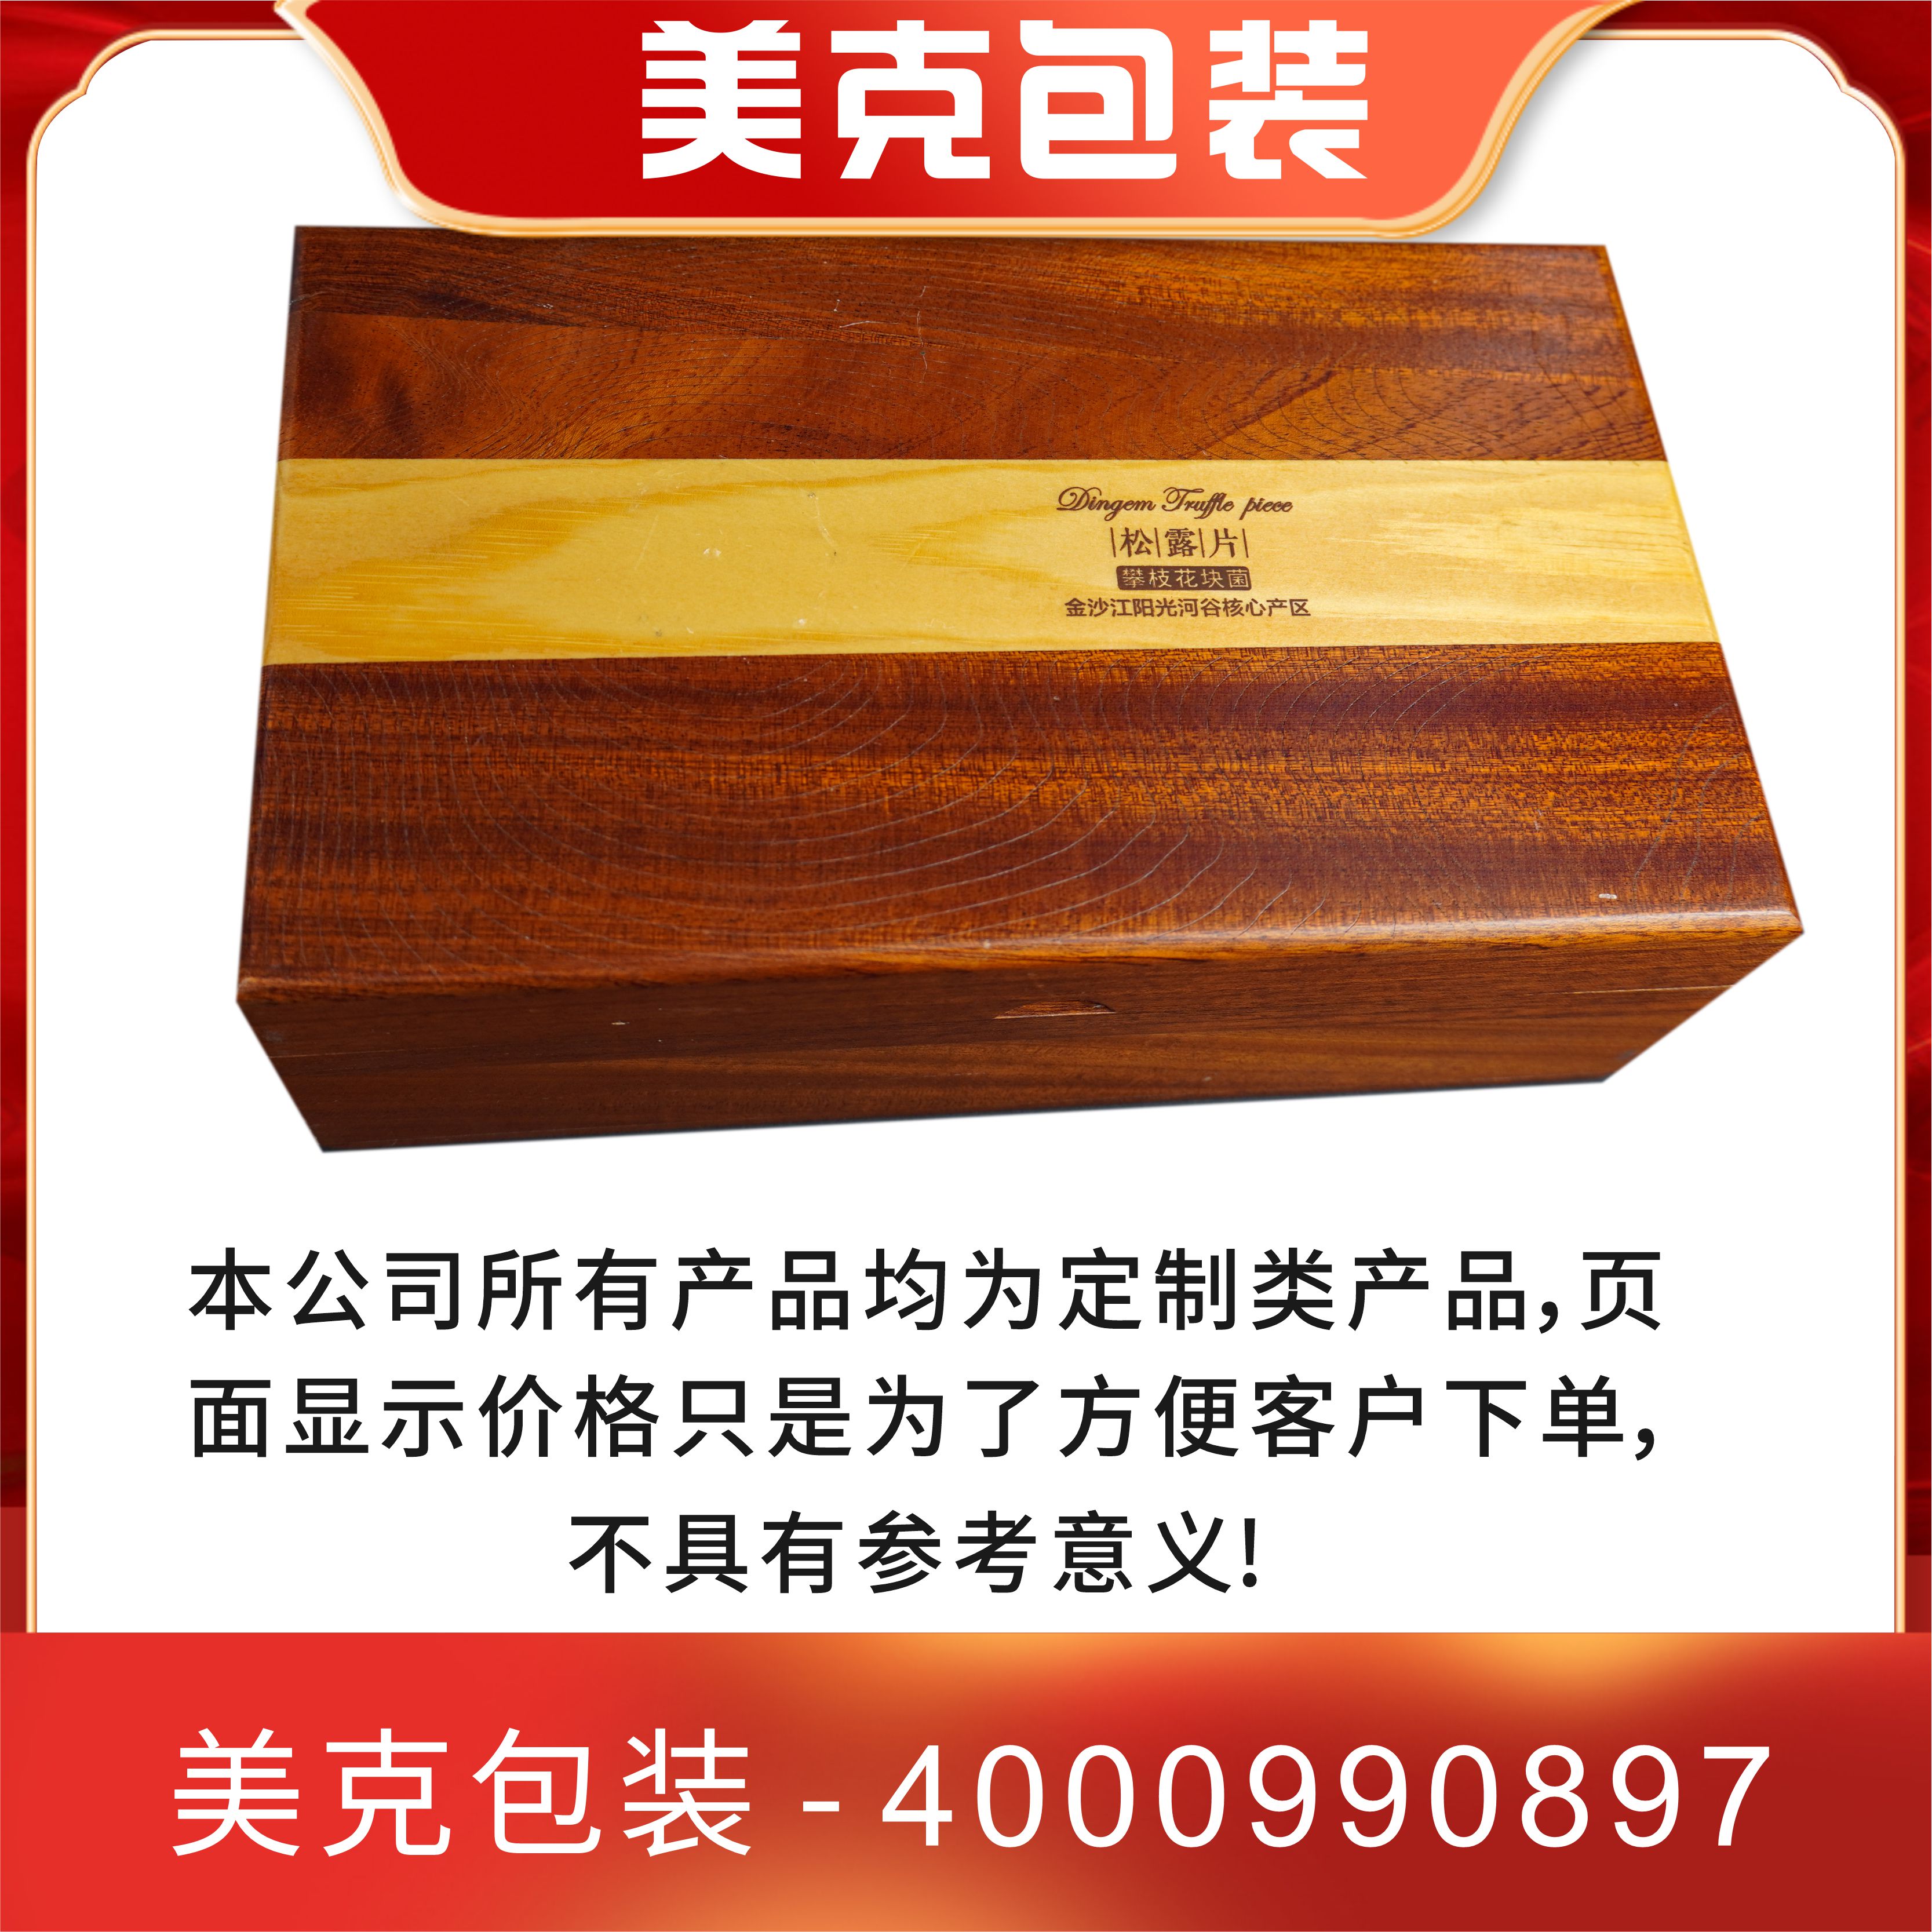 木艺包装礼盒木艺包装礼盒